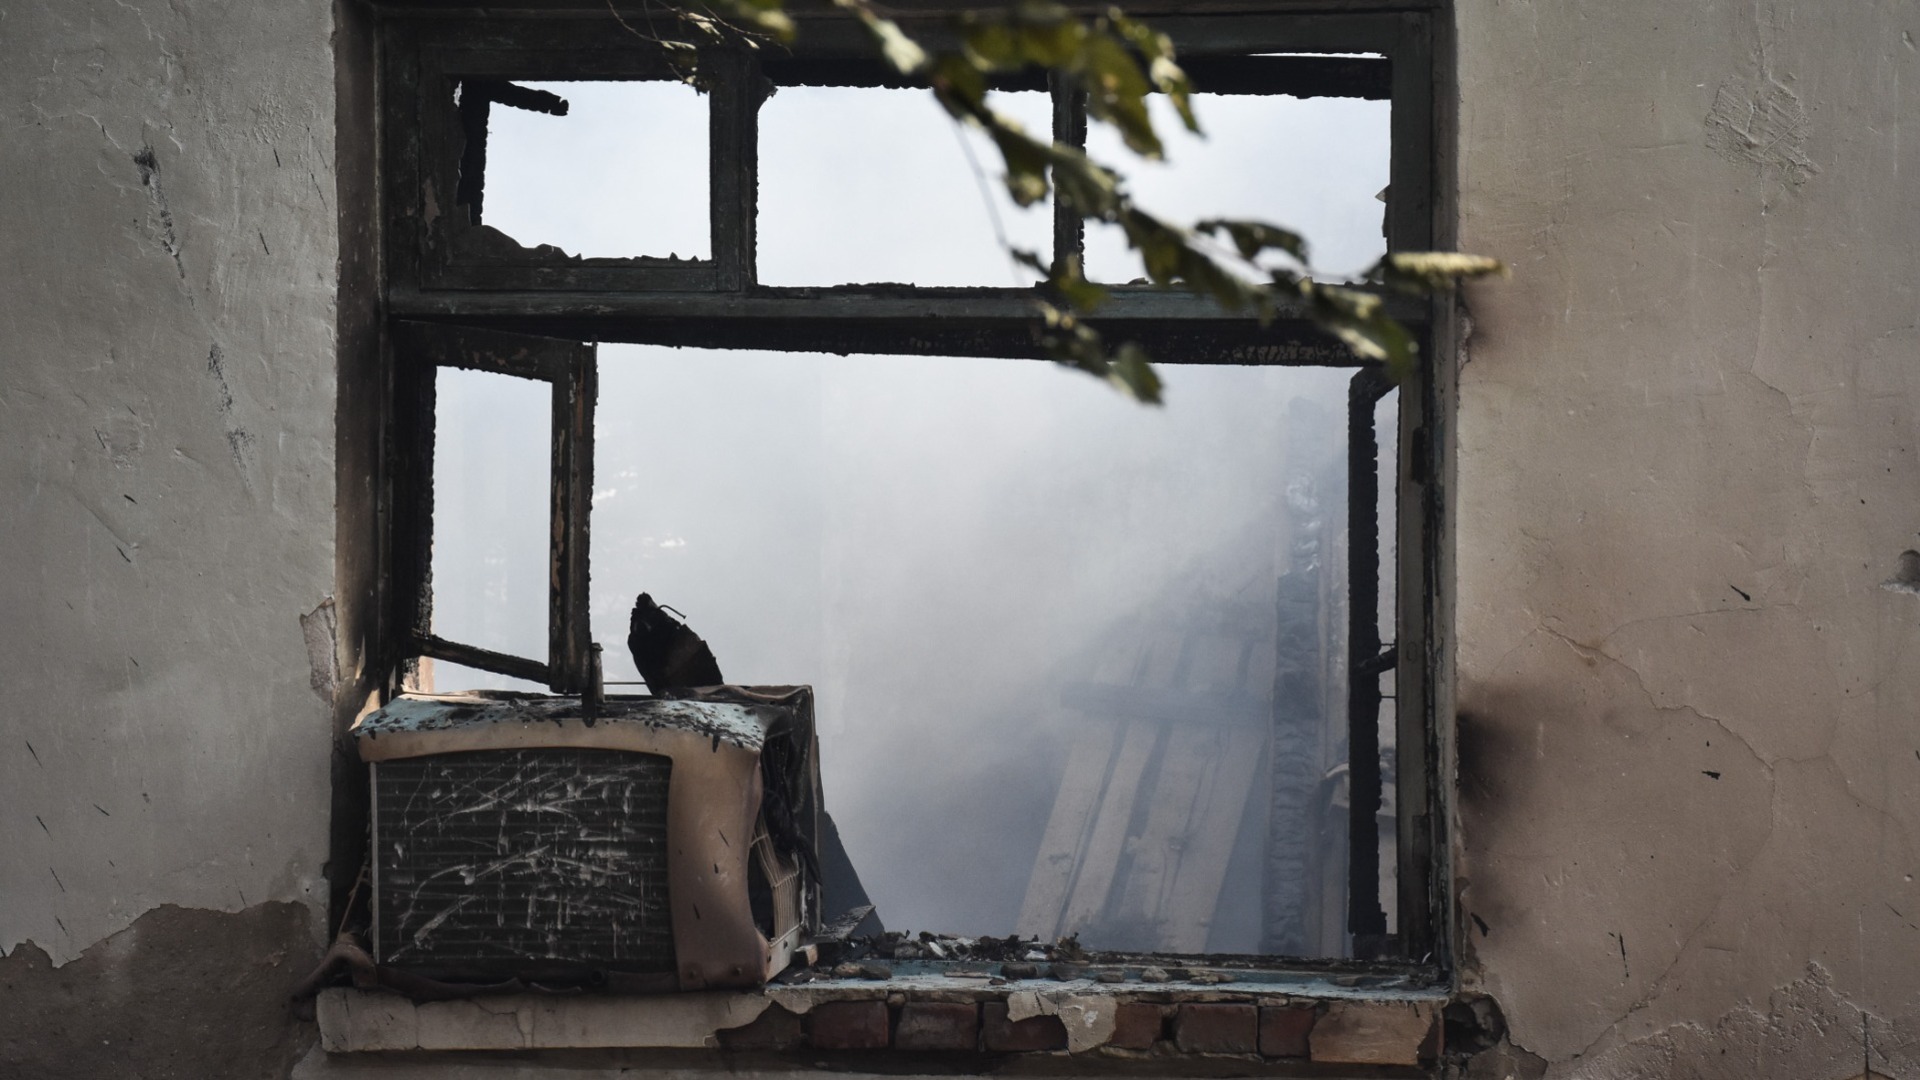 Многоквартирный дом на Бекетова мог загореться из-за поджога